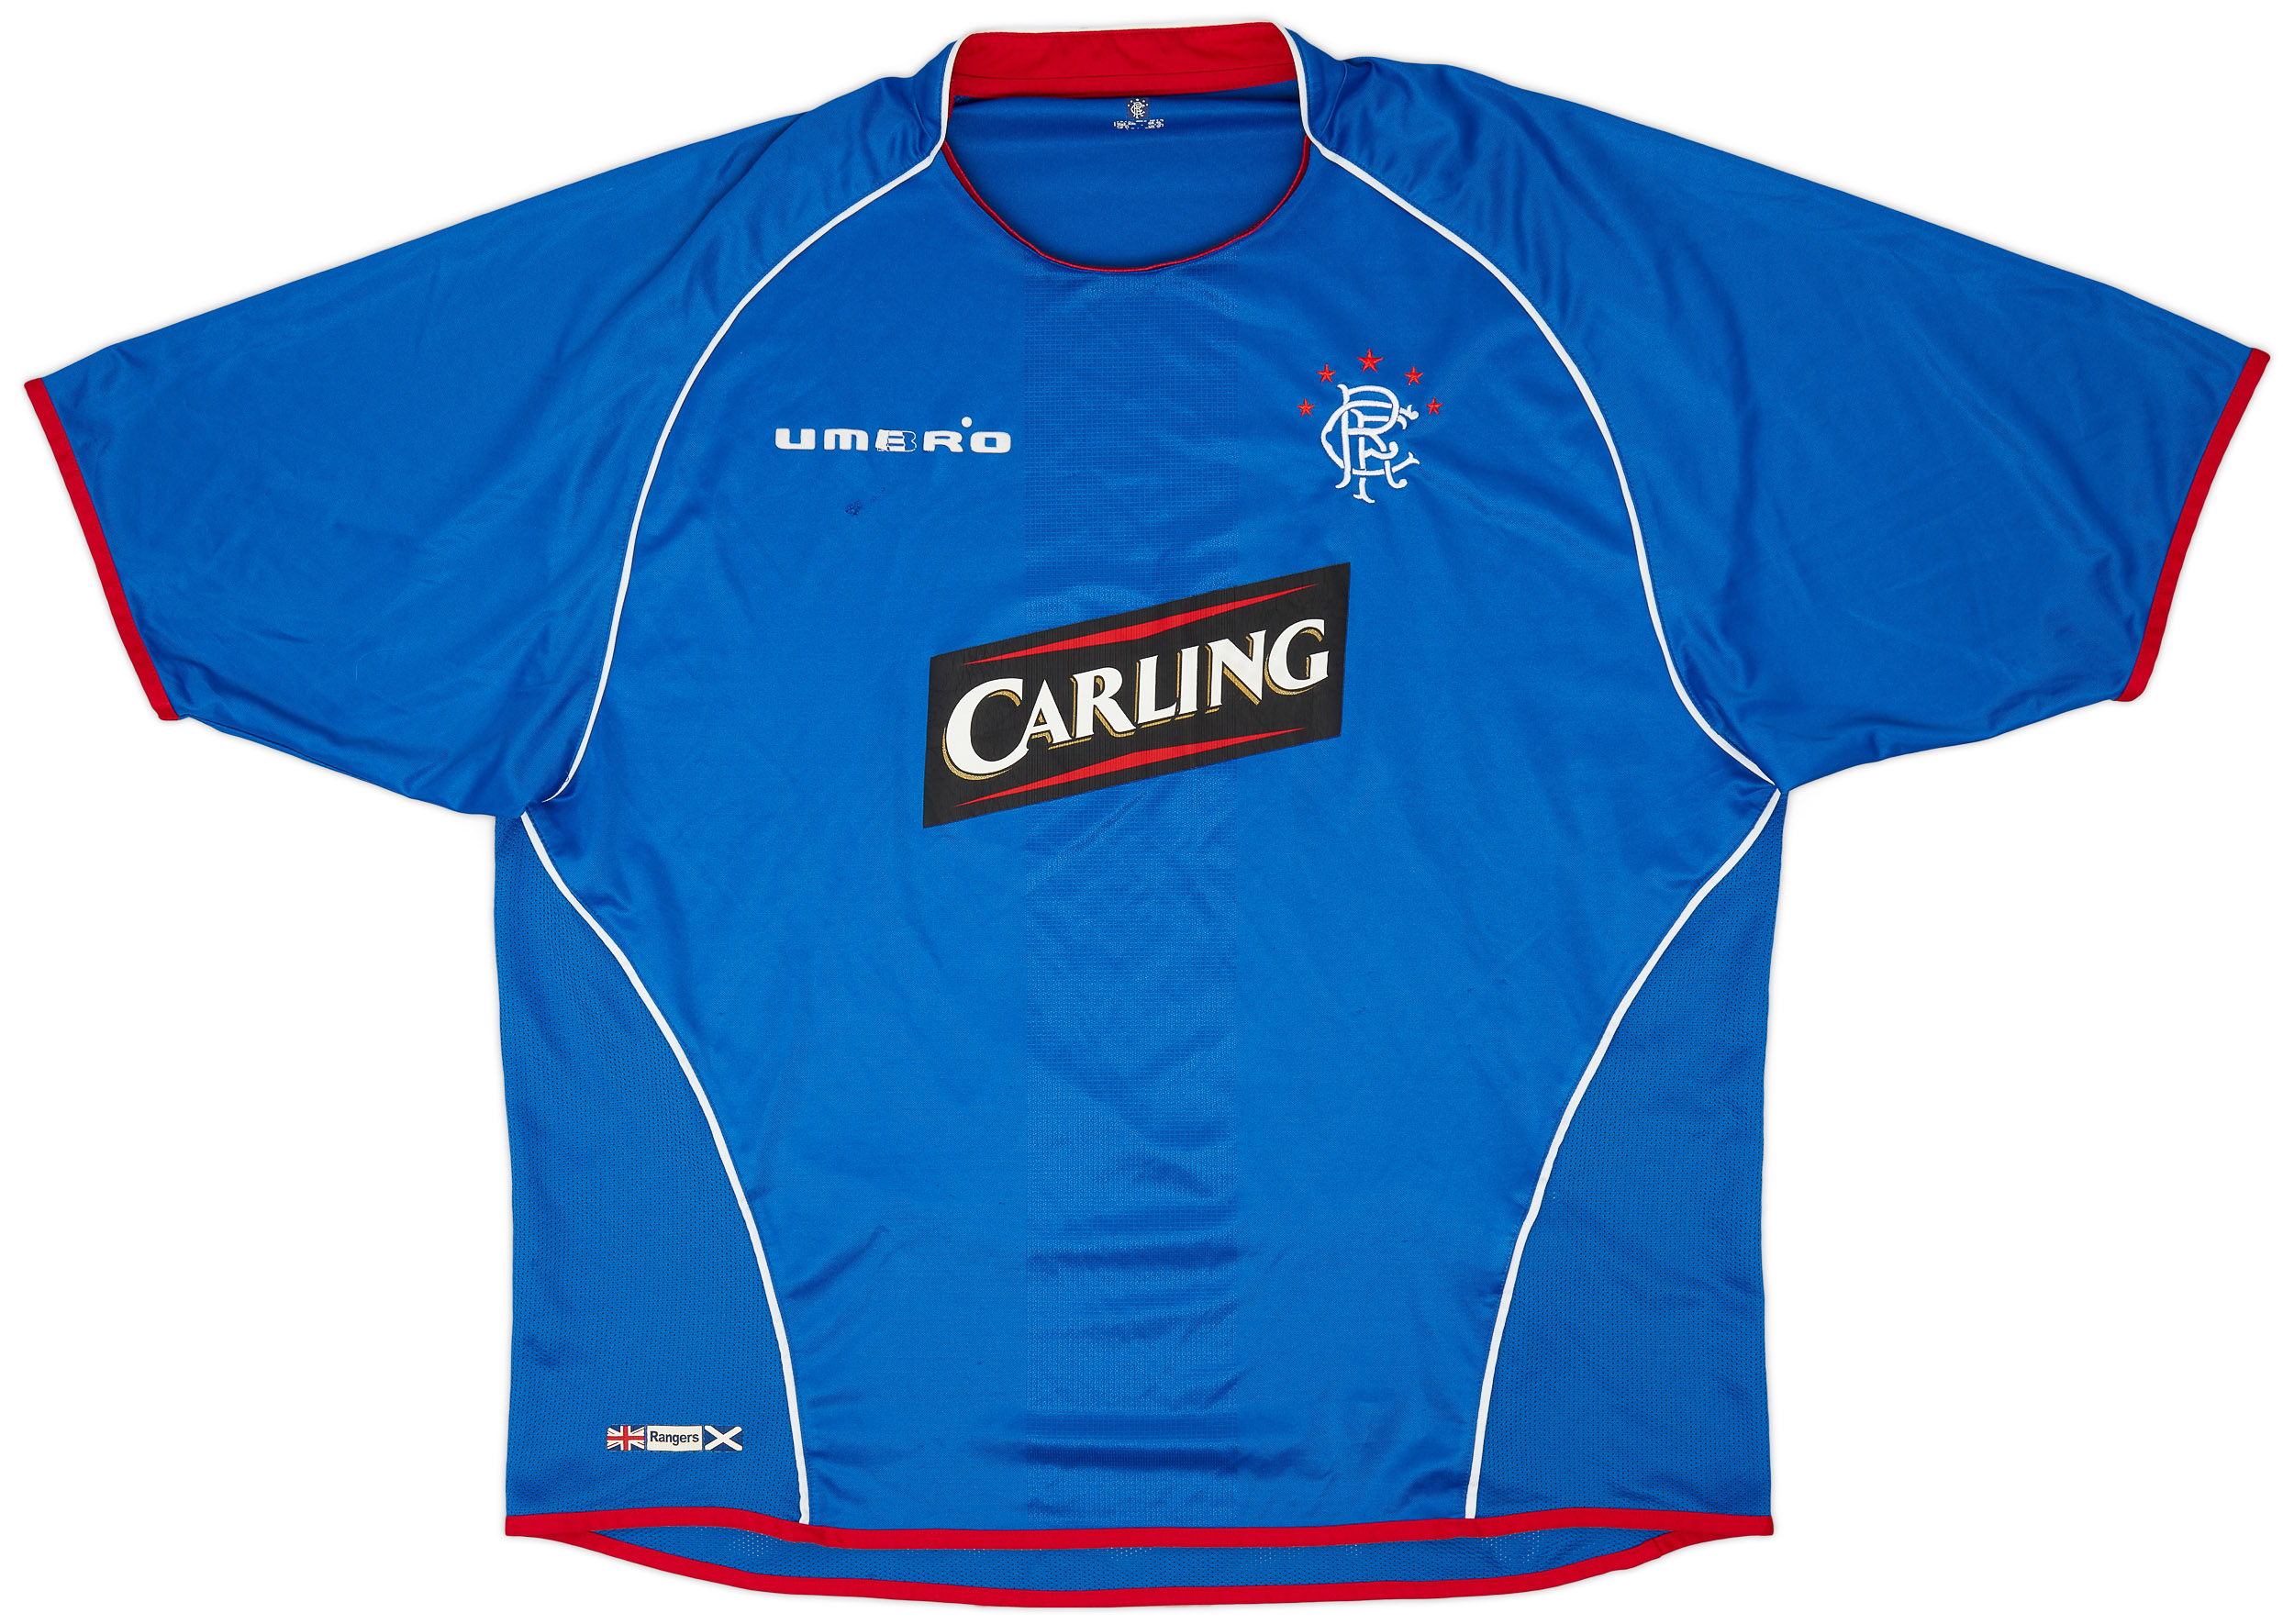 2005-06 Rangers Home Shirt - 5/10 - ()